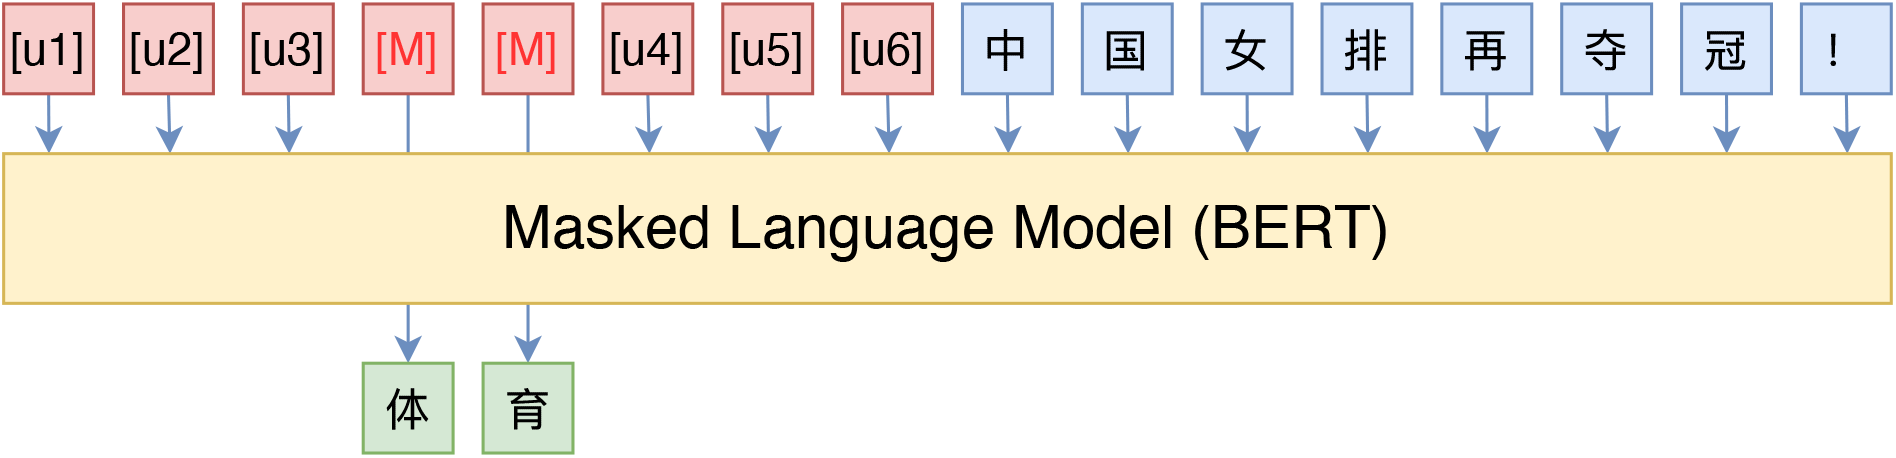 P-tuning直接使用[unused]来构建模版，不关心模版的自然语言性